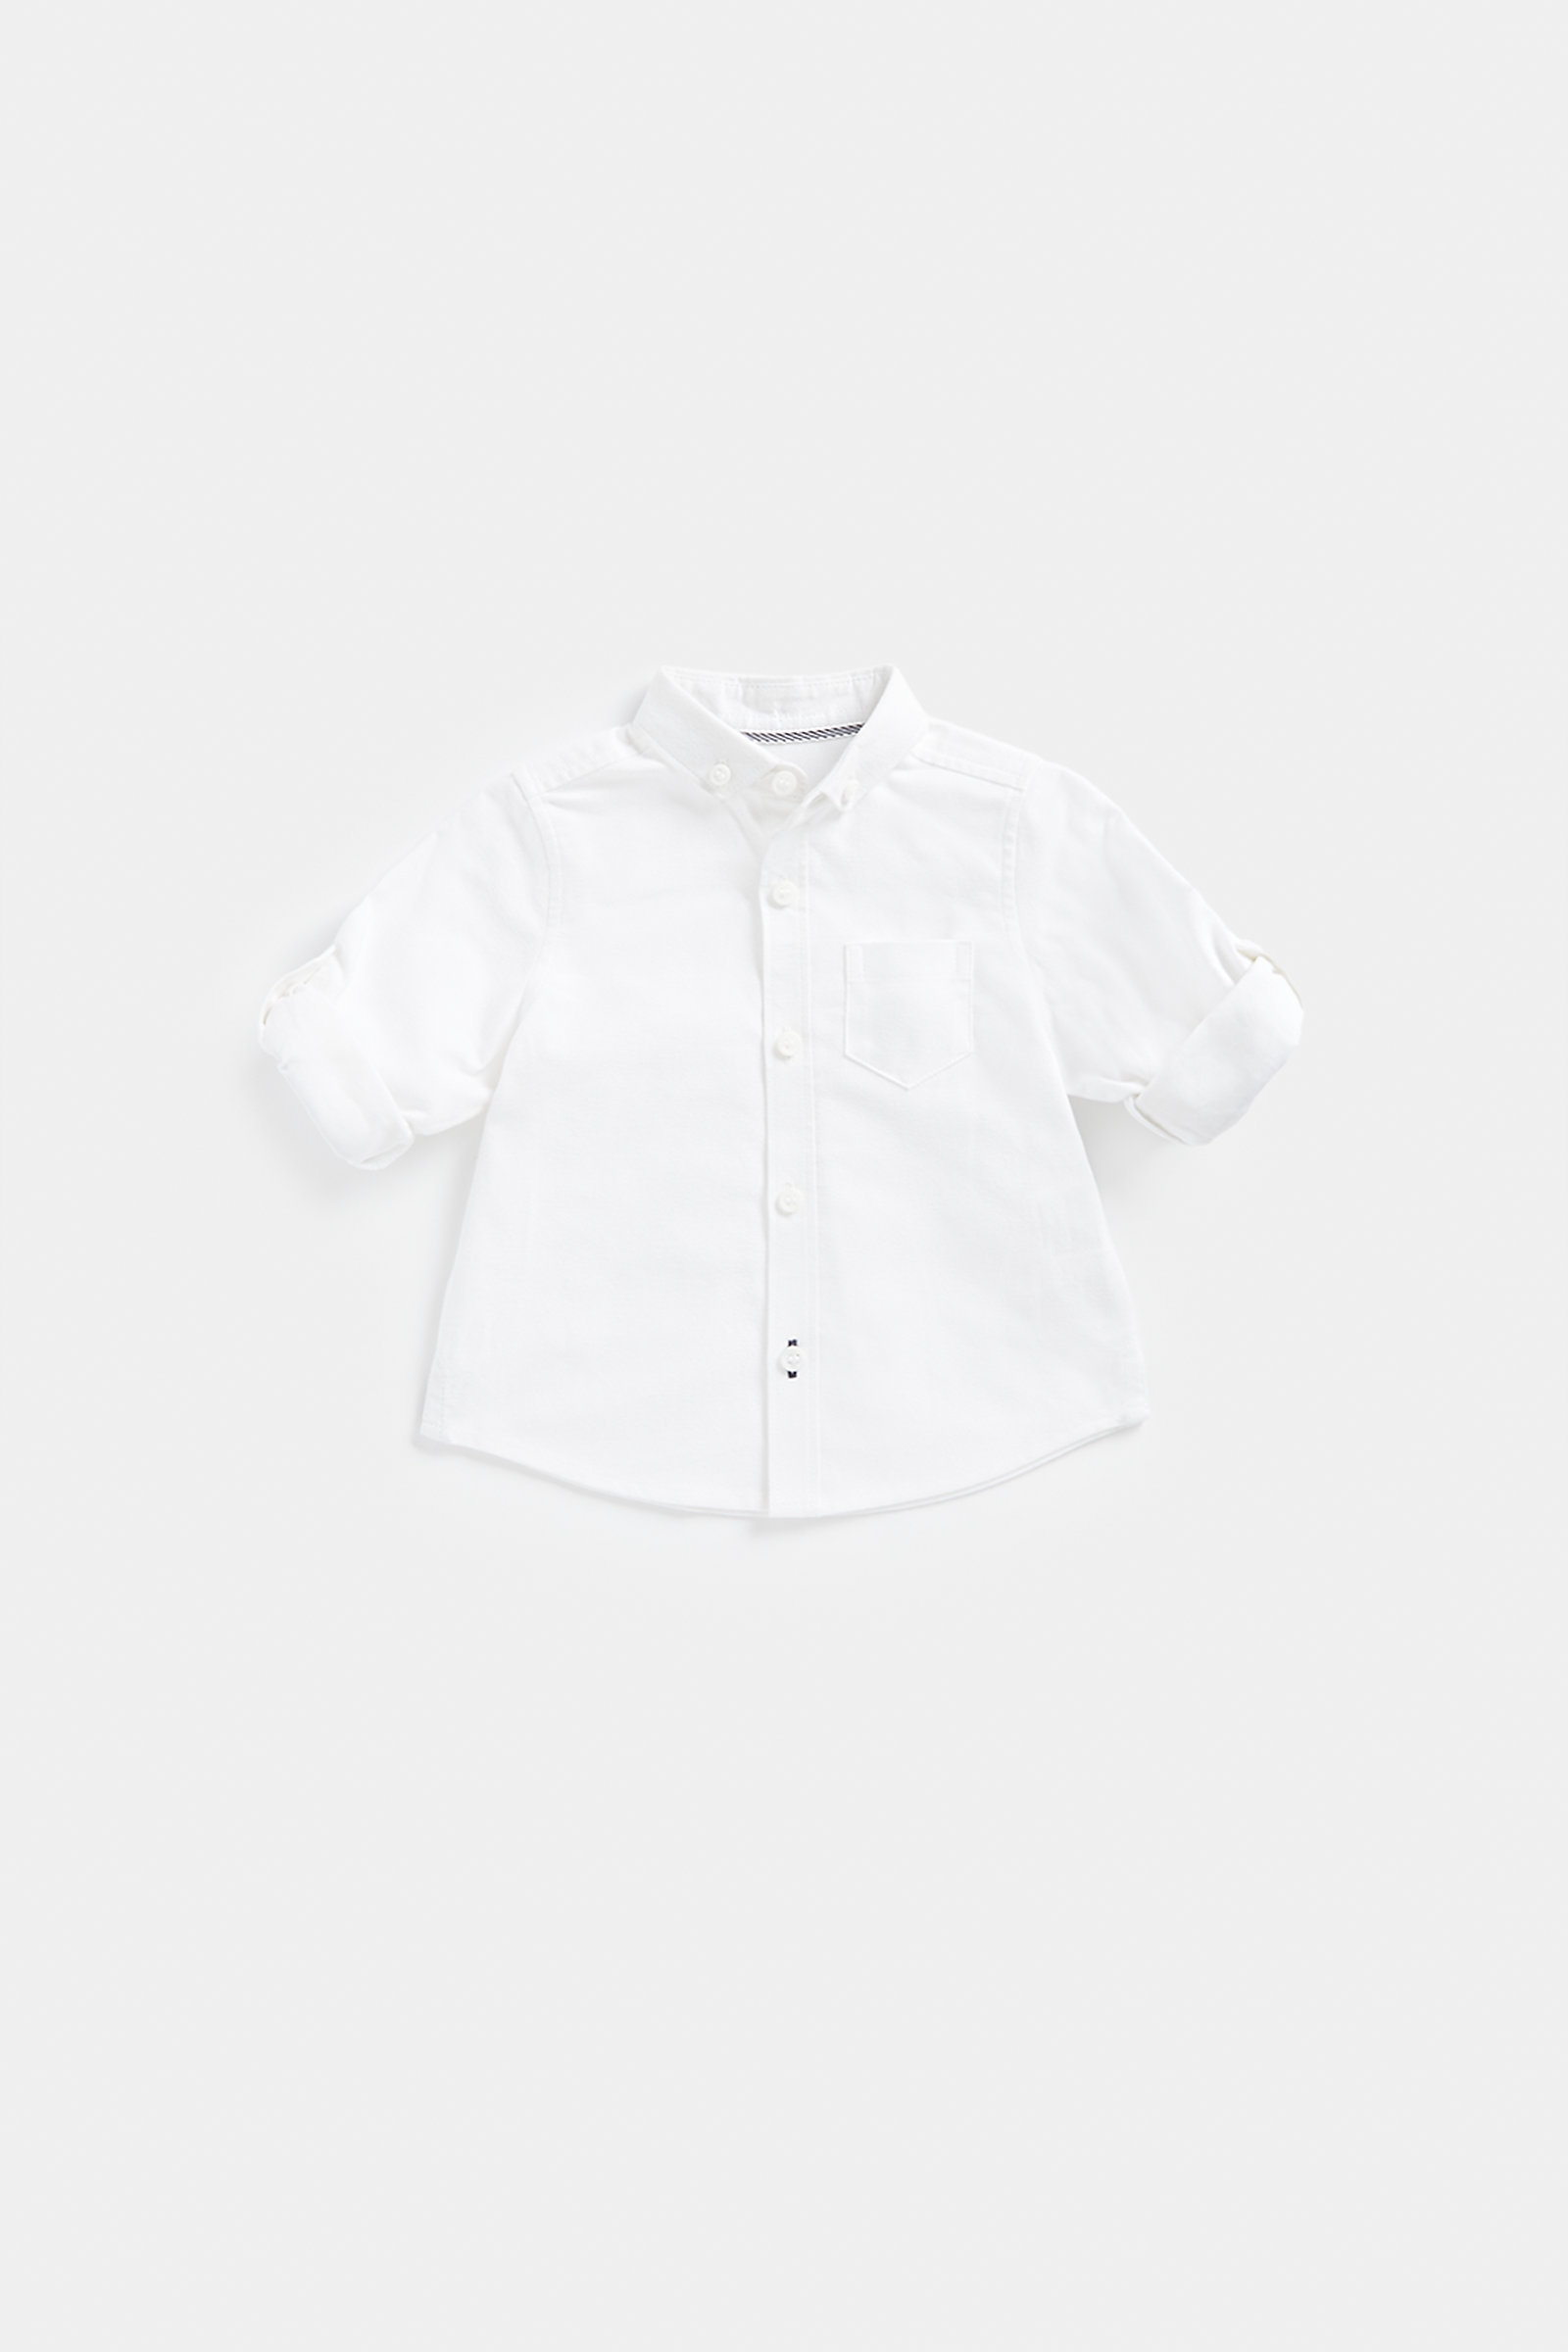 Boys Full Sleeves Shirt  -White